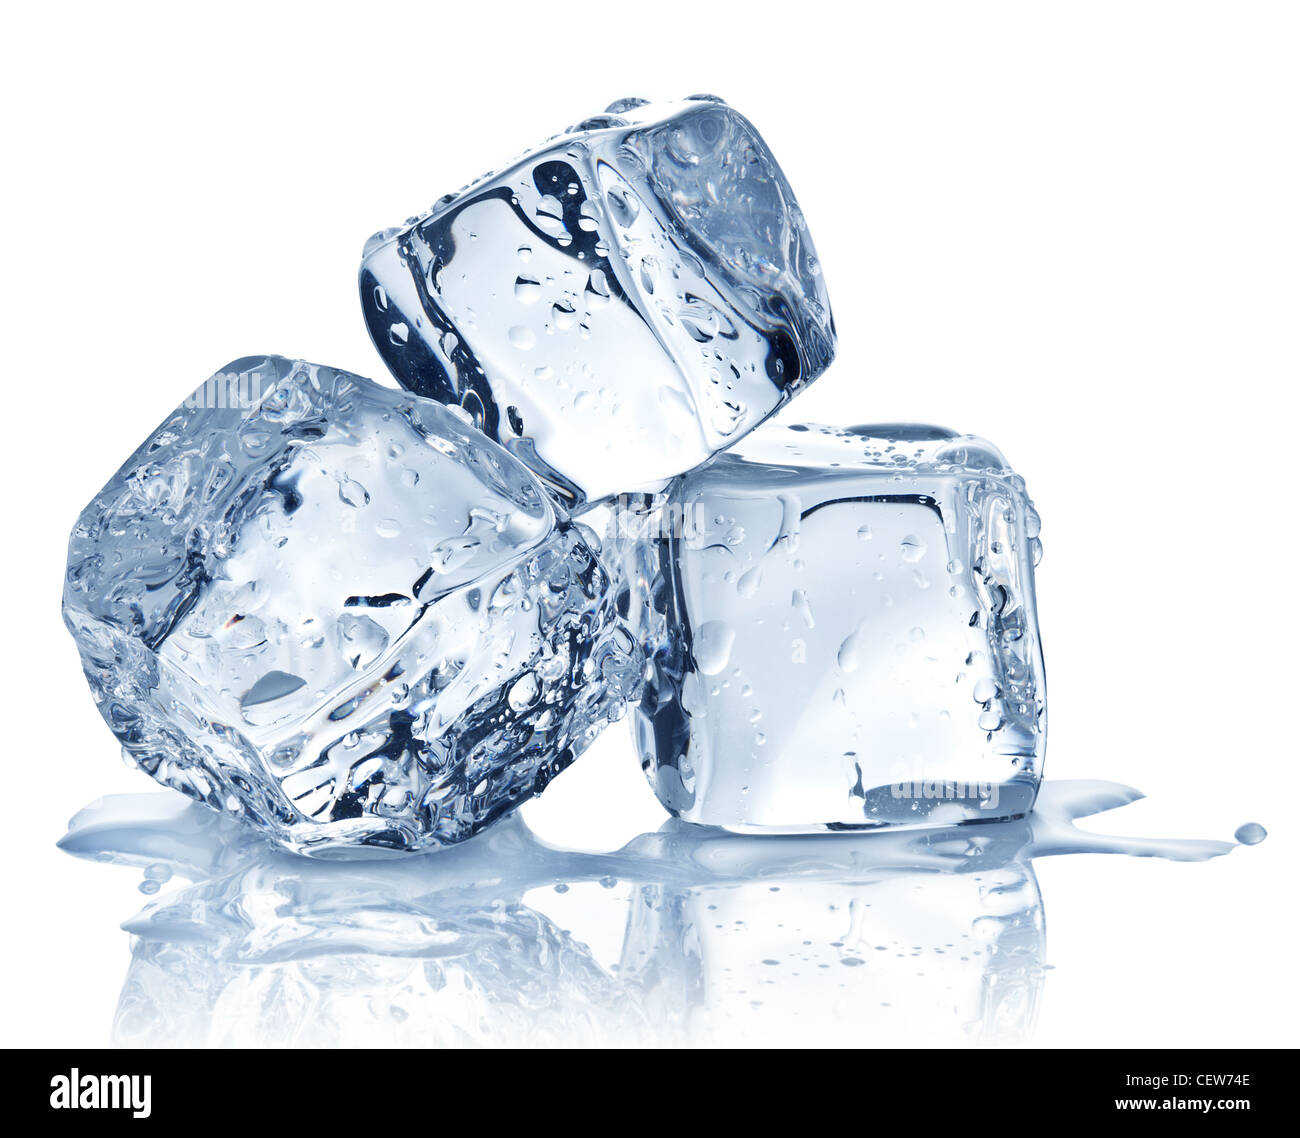 https://c8.alamy.com/comp/CEW74E/three-ice-cubes-on-white-background-CEW74E.jpg